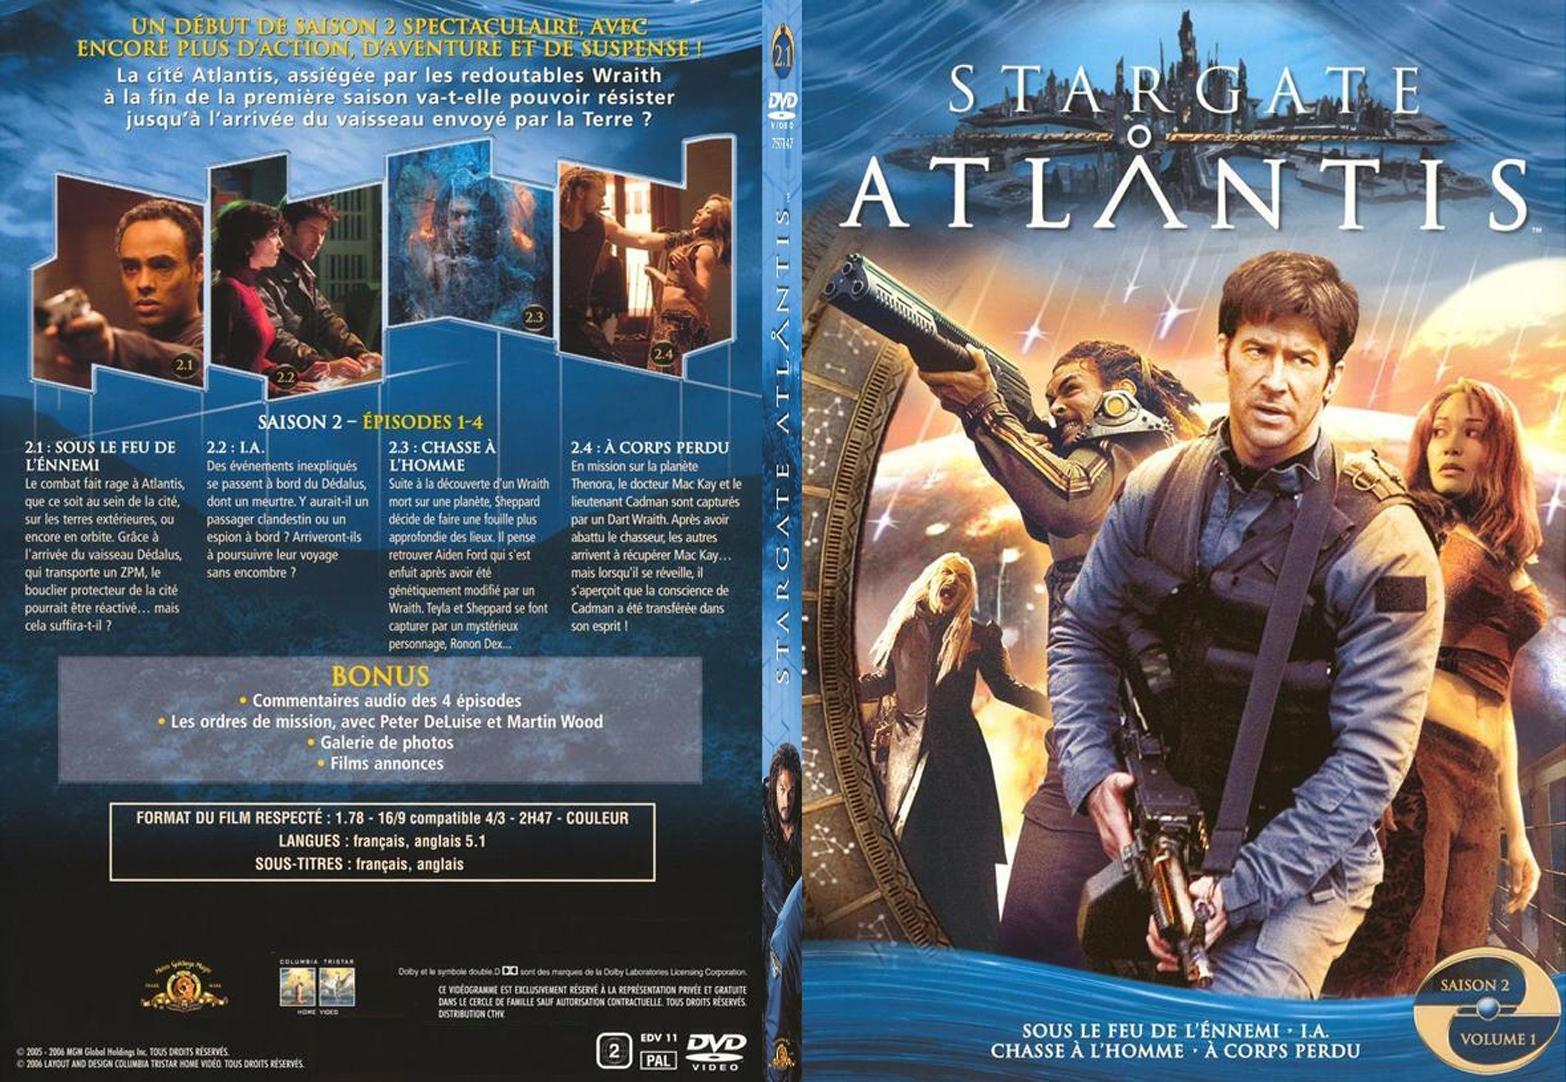 Jaquette DVD Stargate Atlantis saison 2 vol 1 - SLIM